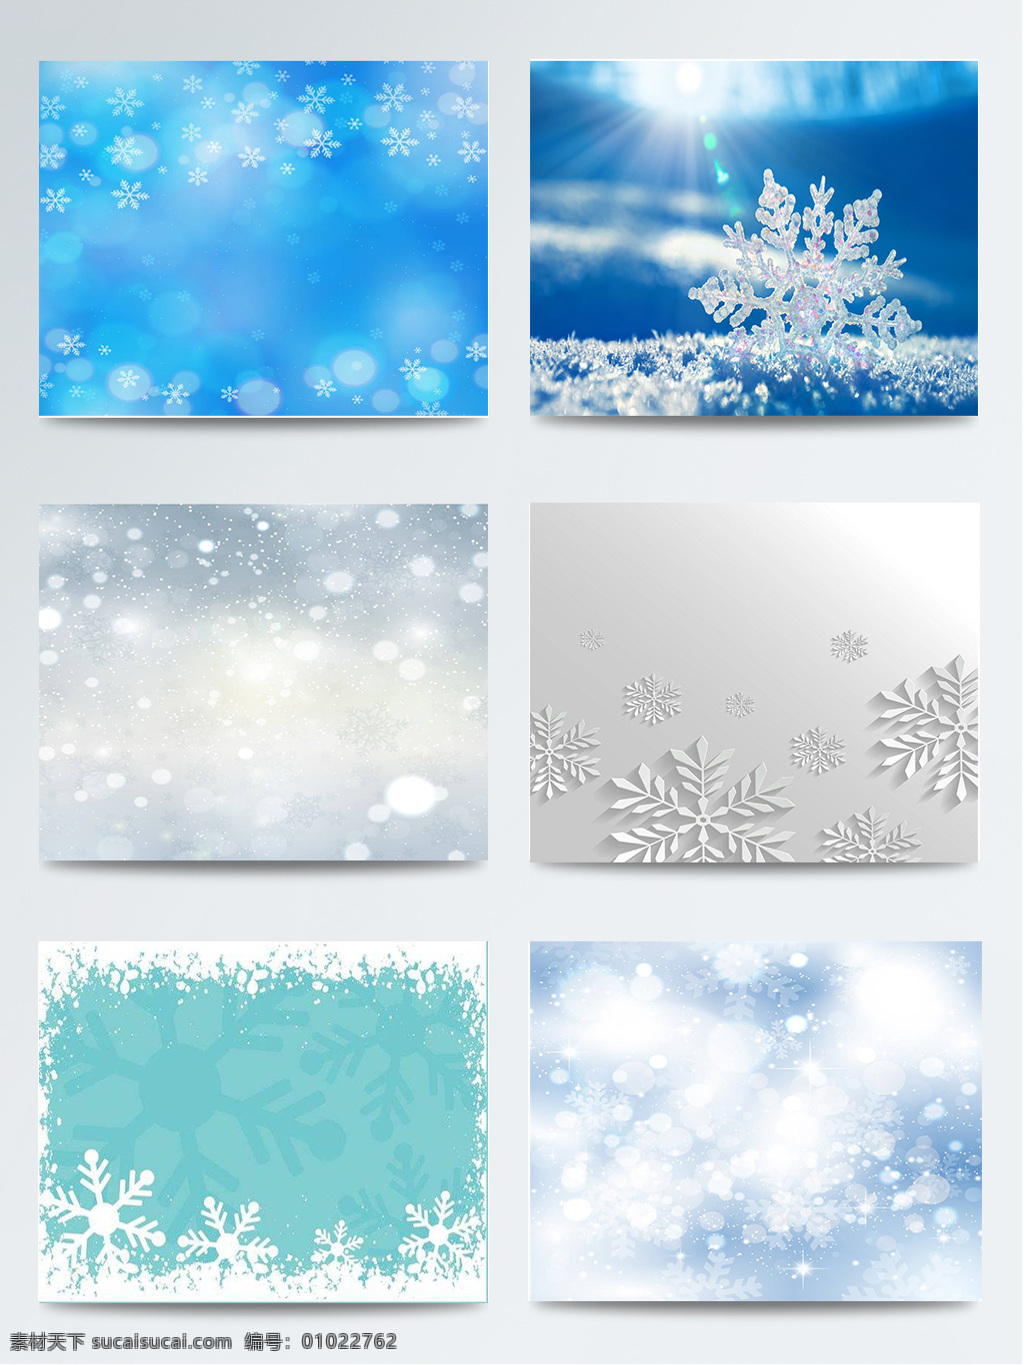 组 蓝色 雪花 背景 图集 白色 创意 冬季 浅白色 青色 印刷